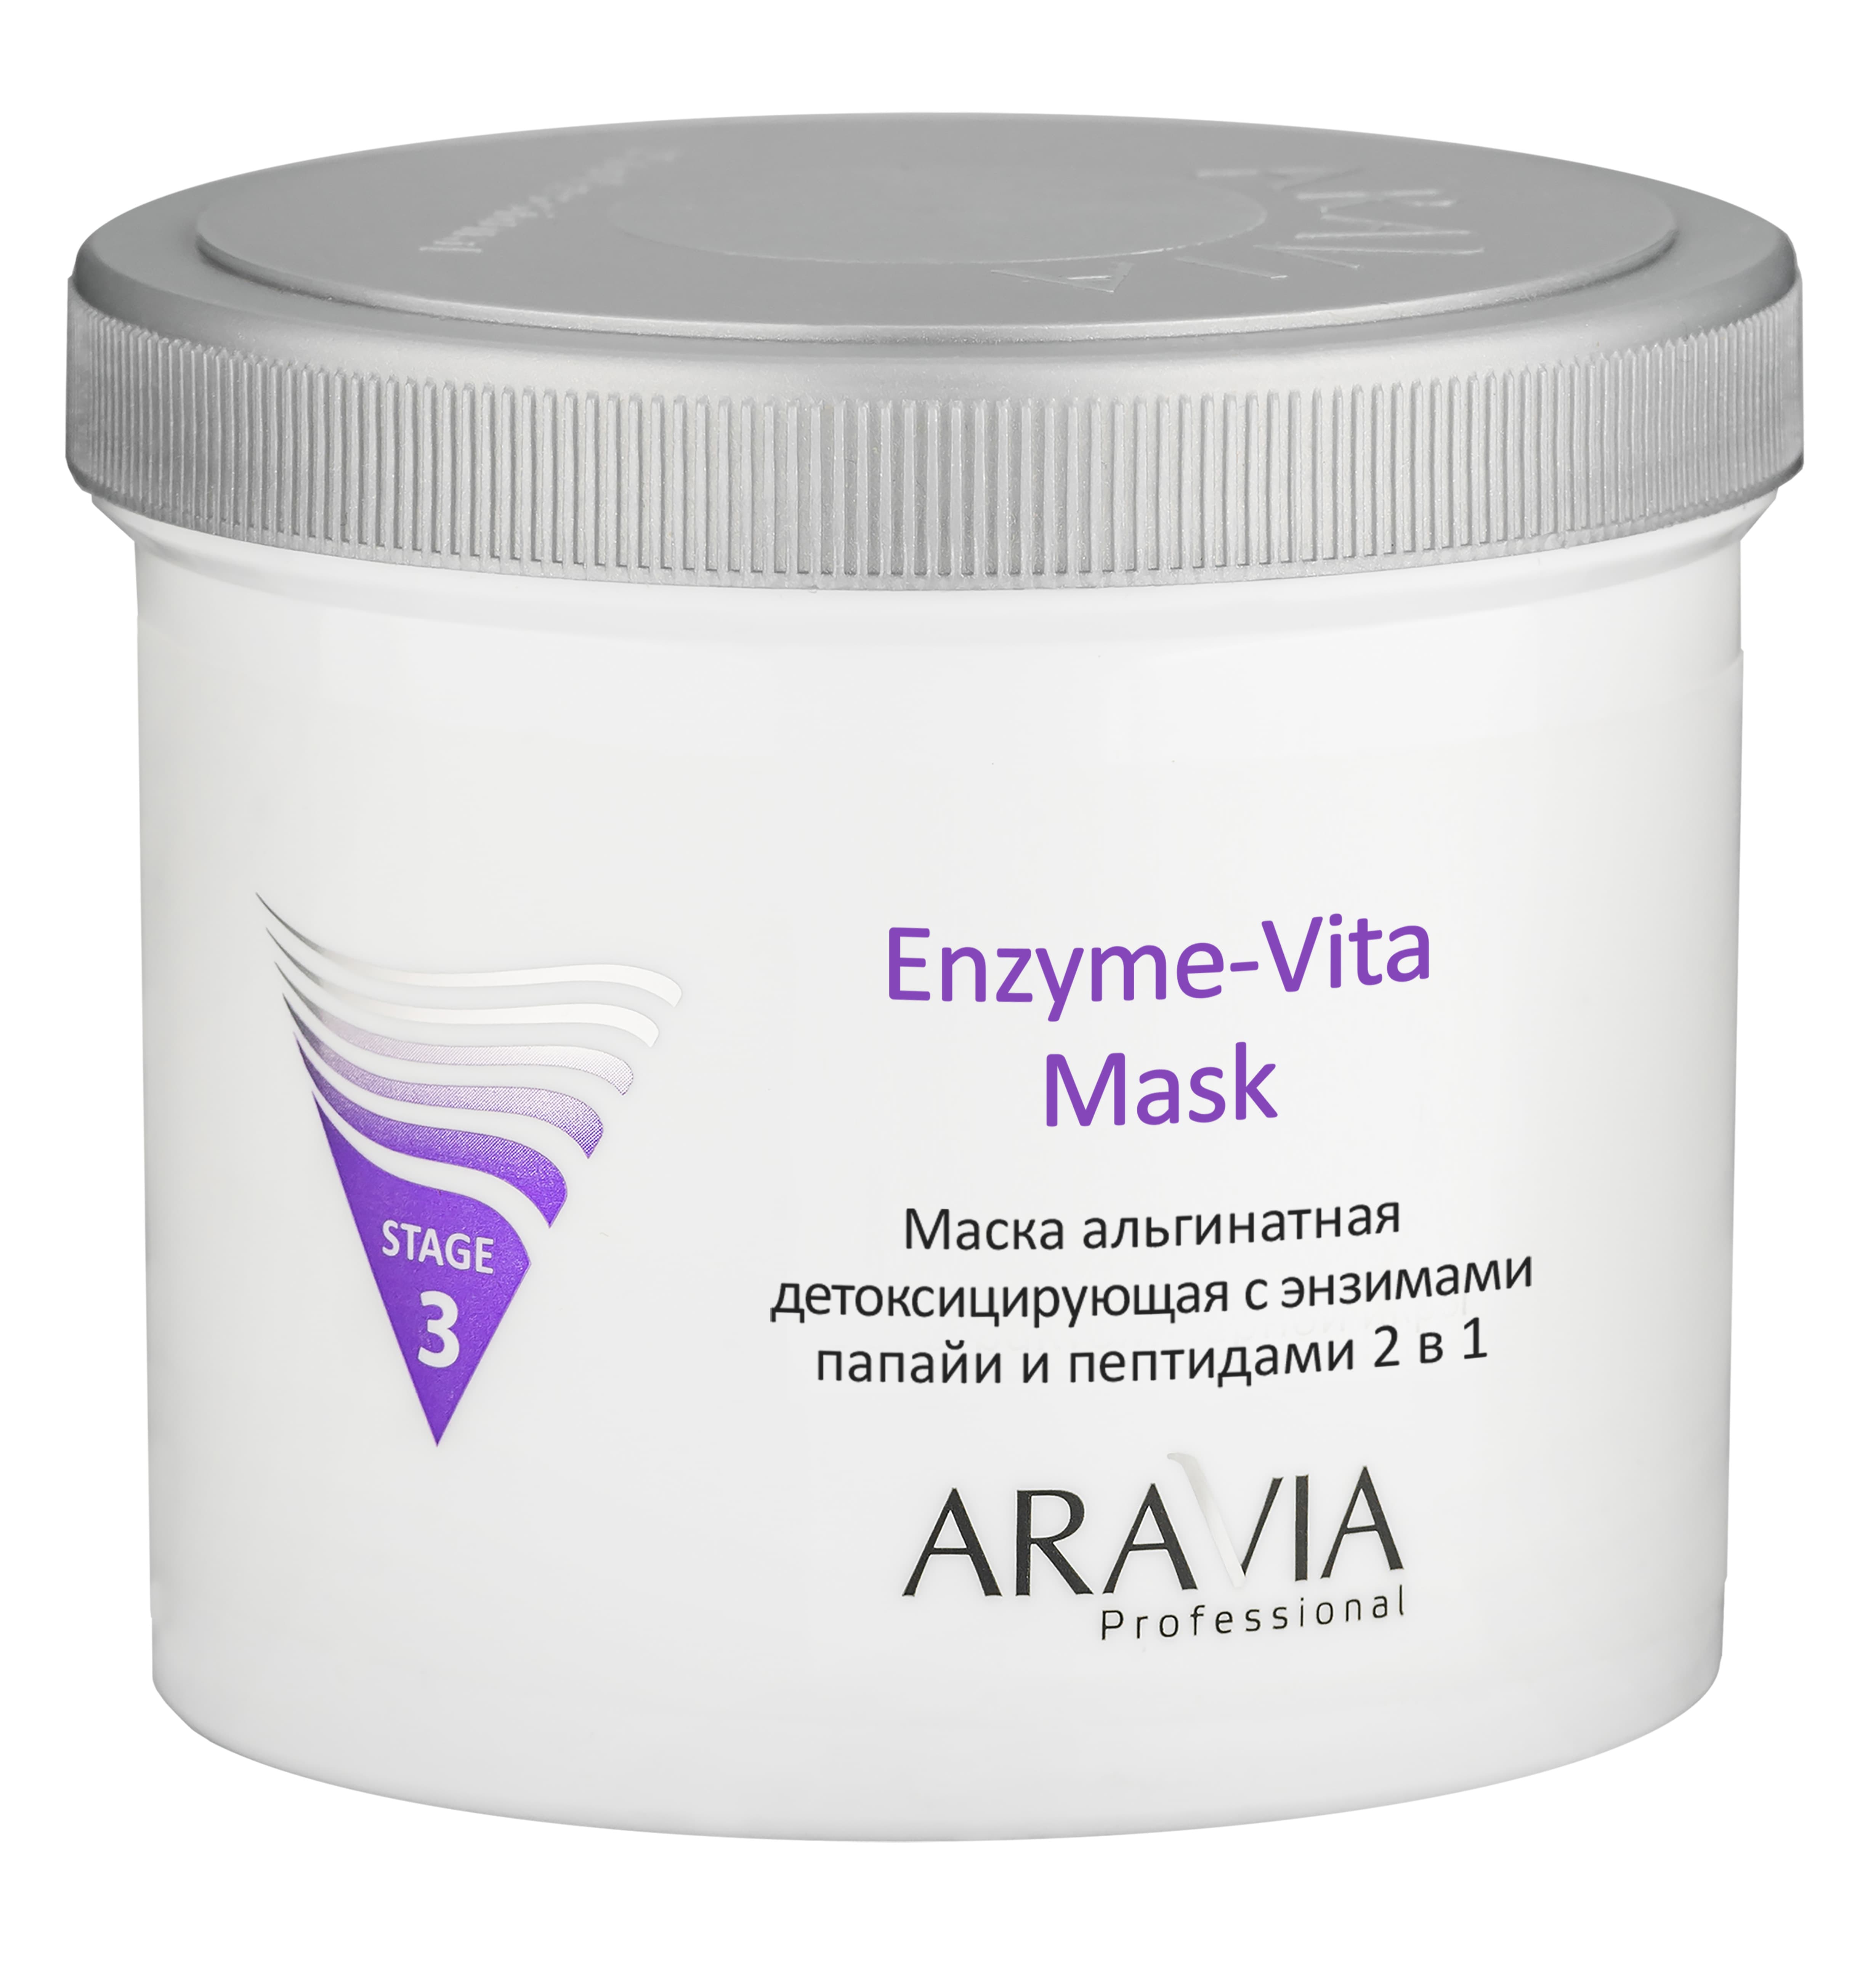 Маска альгинатная детоксицирующая с энзимами папайи и пептидами Enzyme-Vita Mask,550 мл,ARAVIA. 6014